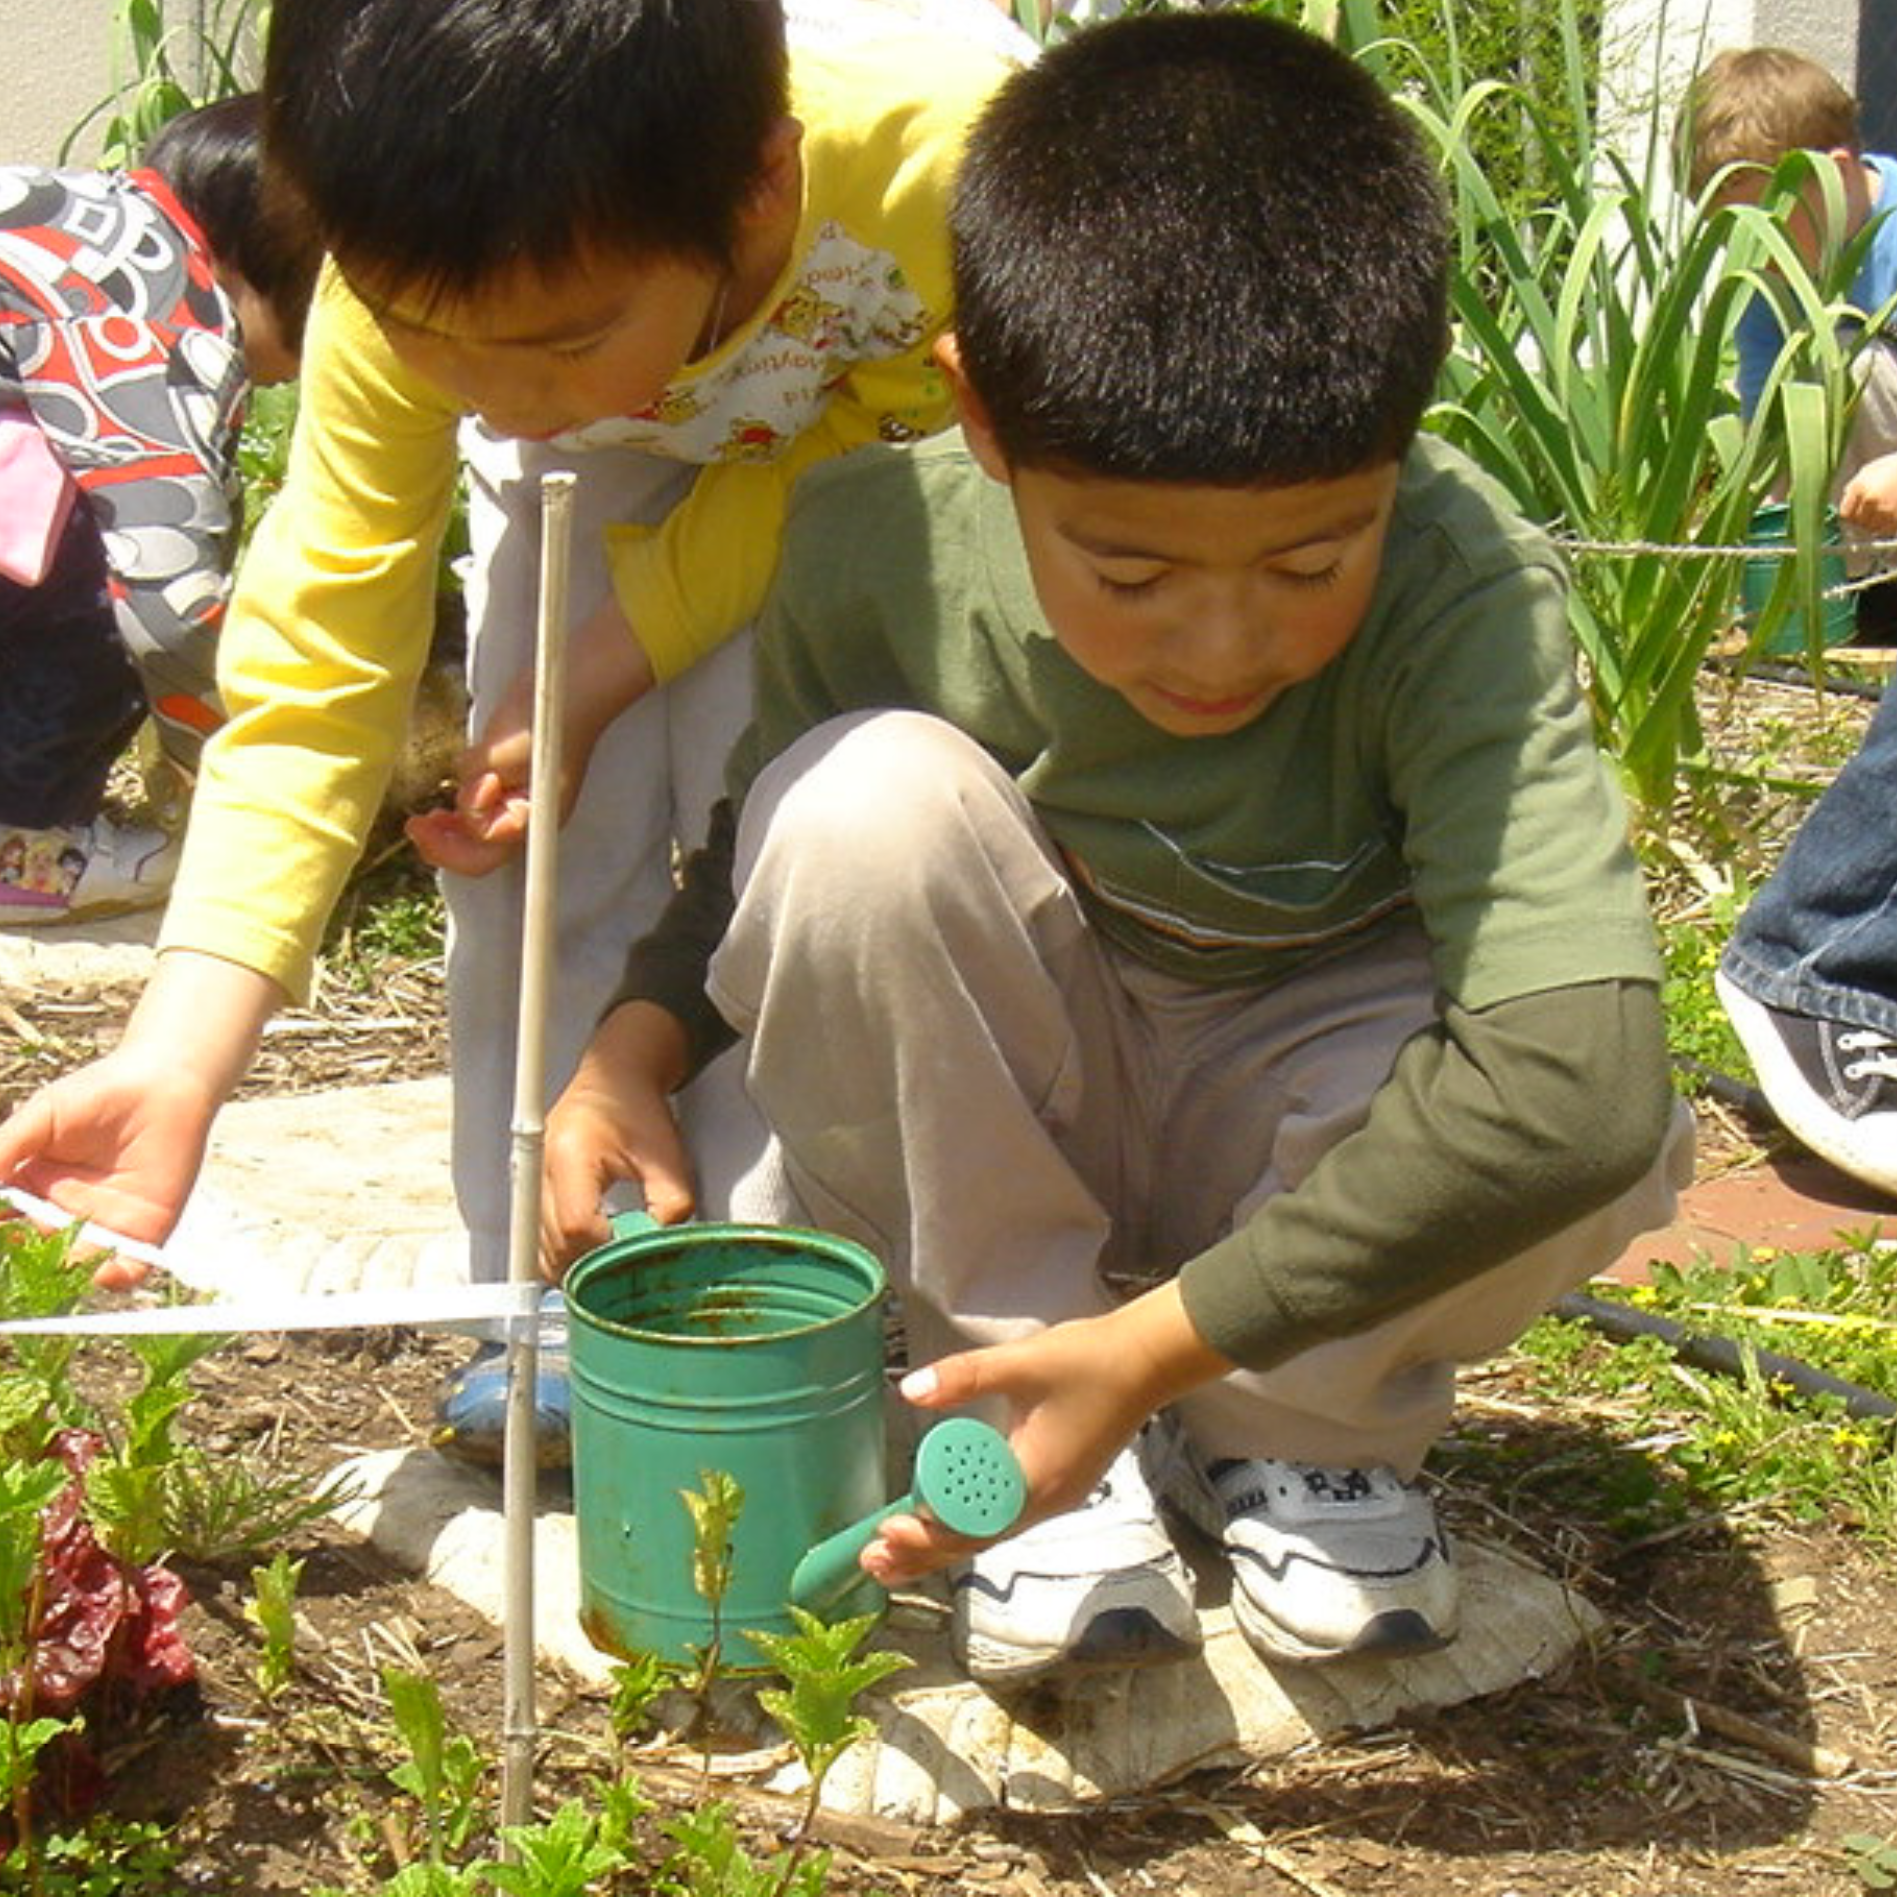 Children gardening together.